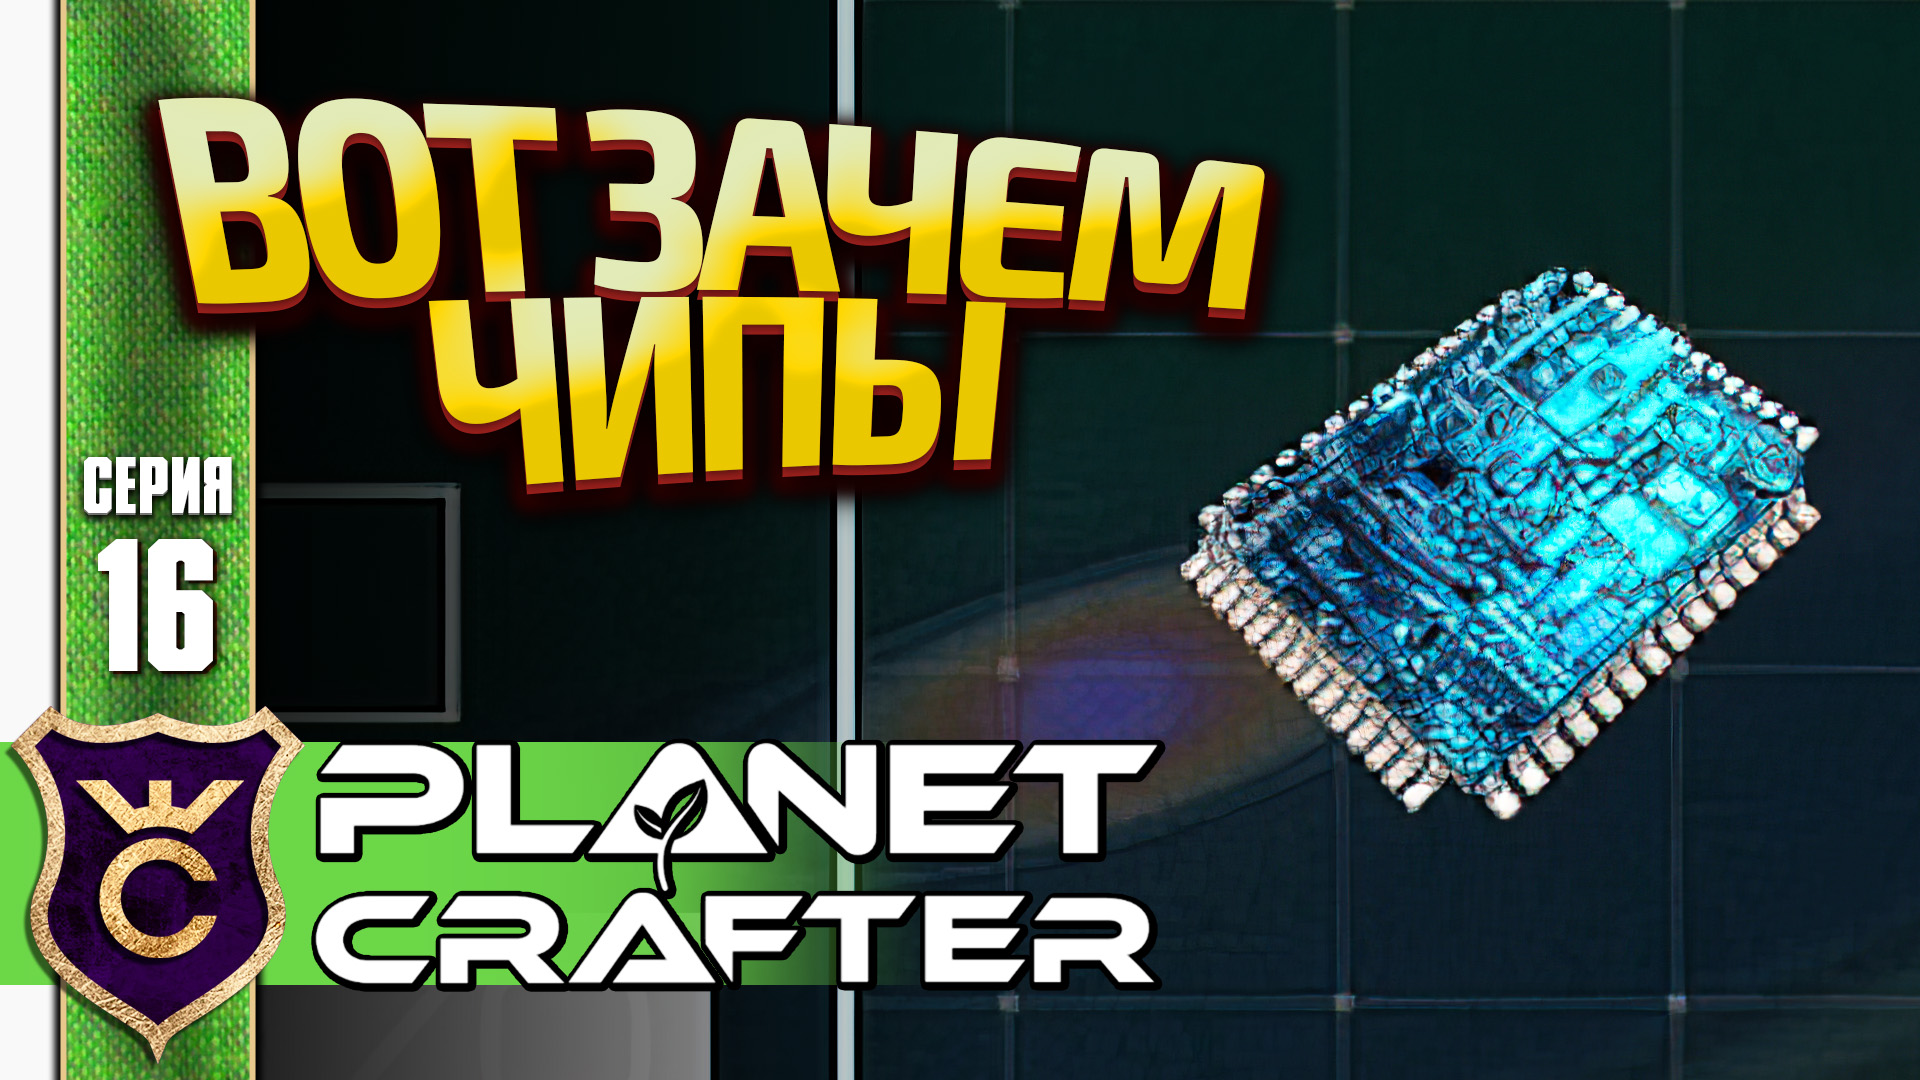 ИССЛЕДОВАЛИ ВСЕ ЧЕРТЕЖИ! The Planet Crafter #16